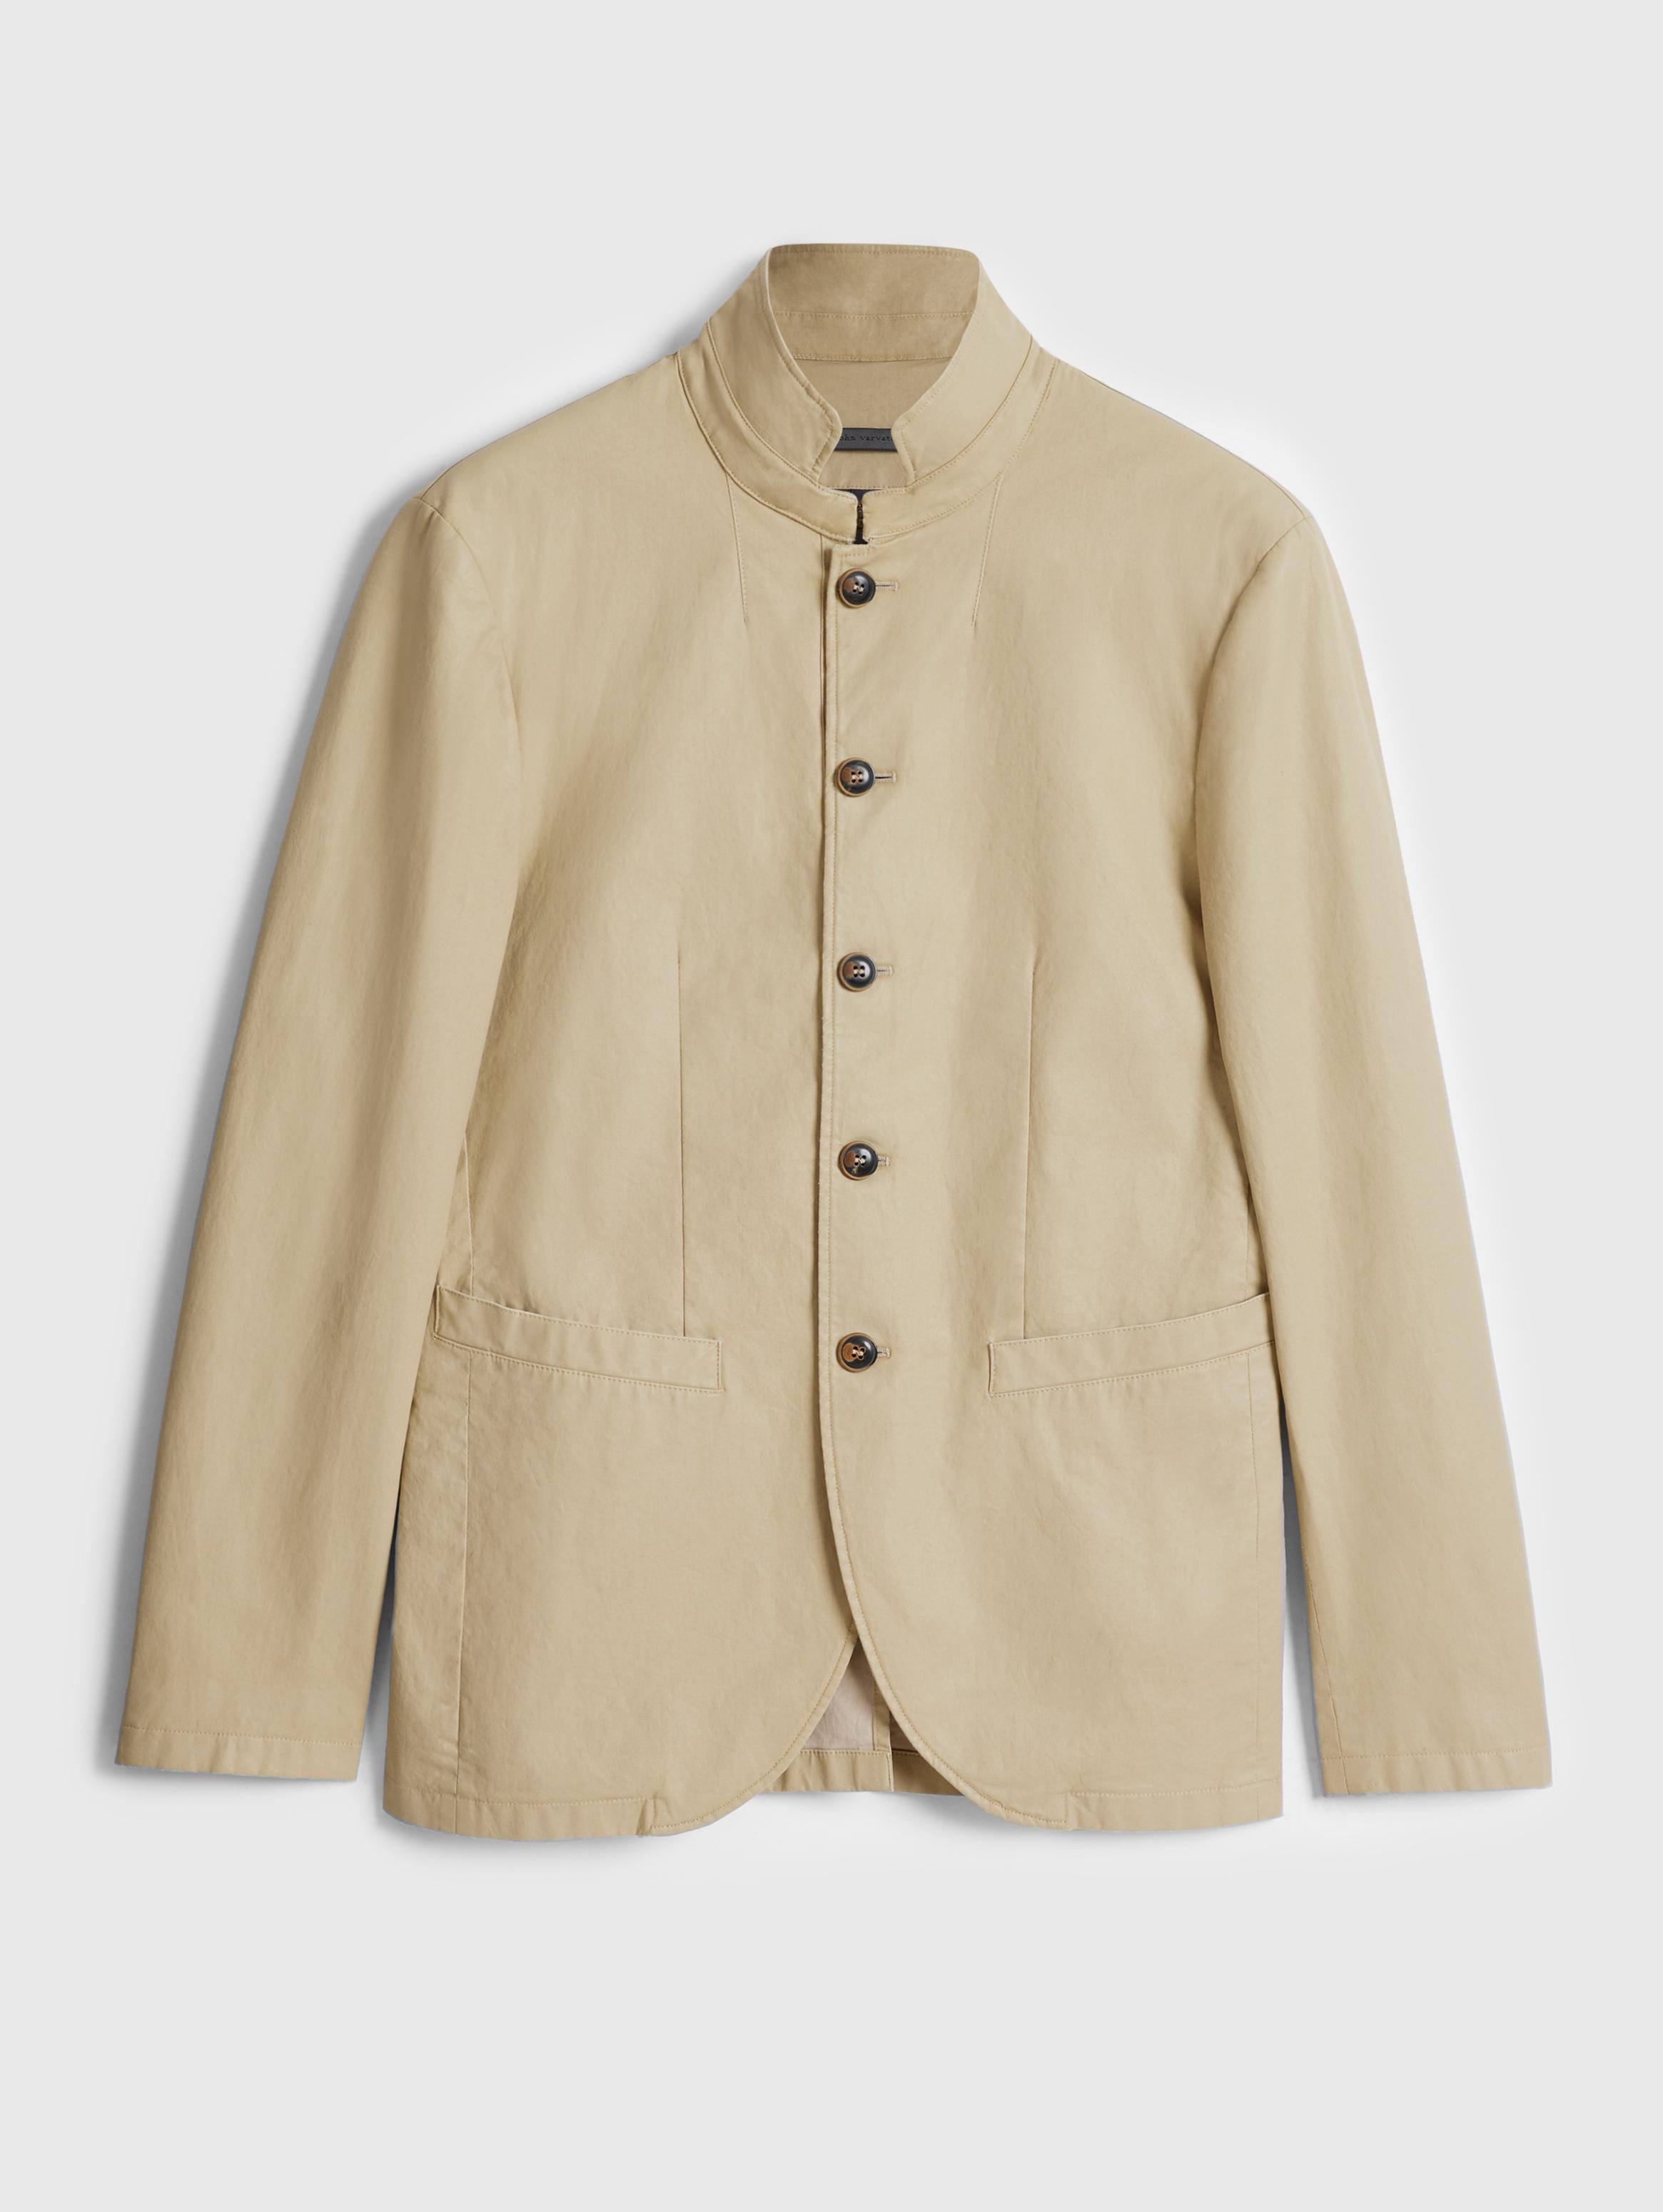 JOHN Mandarin Collar Button Jacket34000円くらいでした